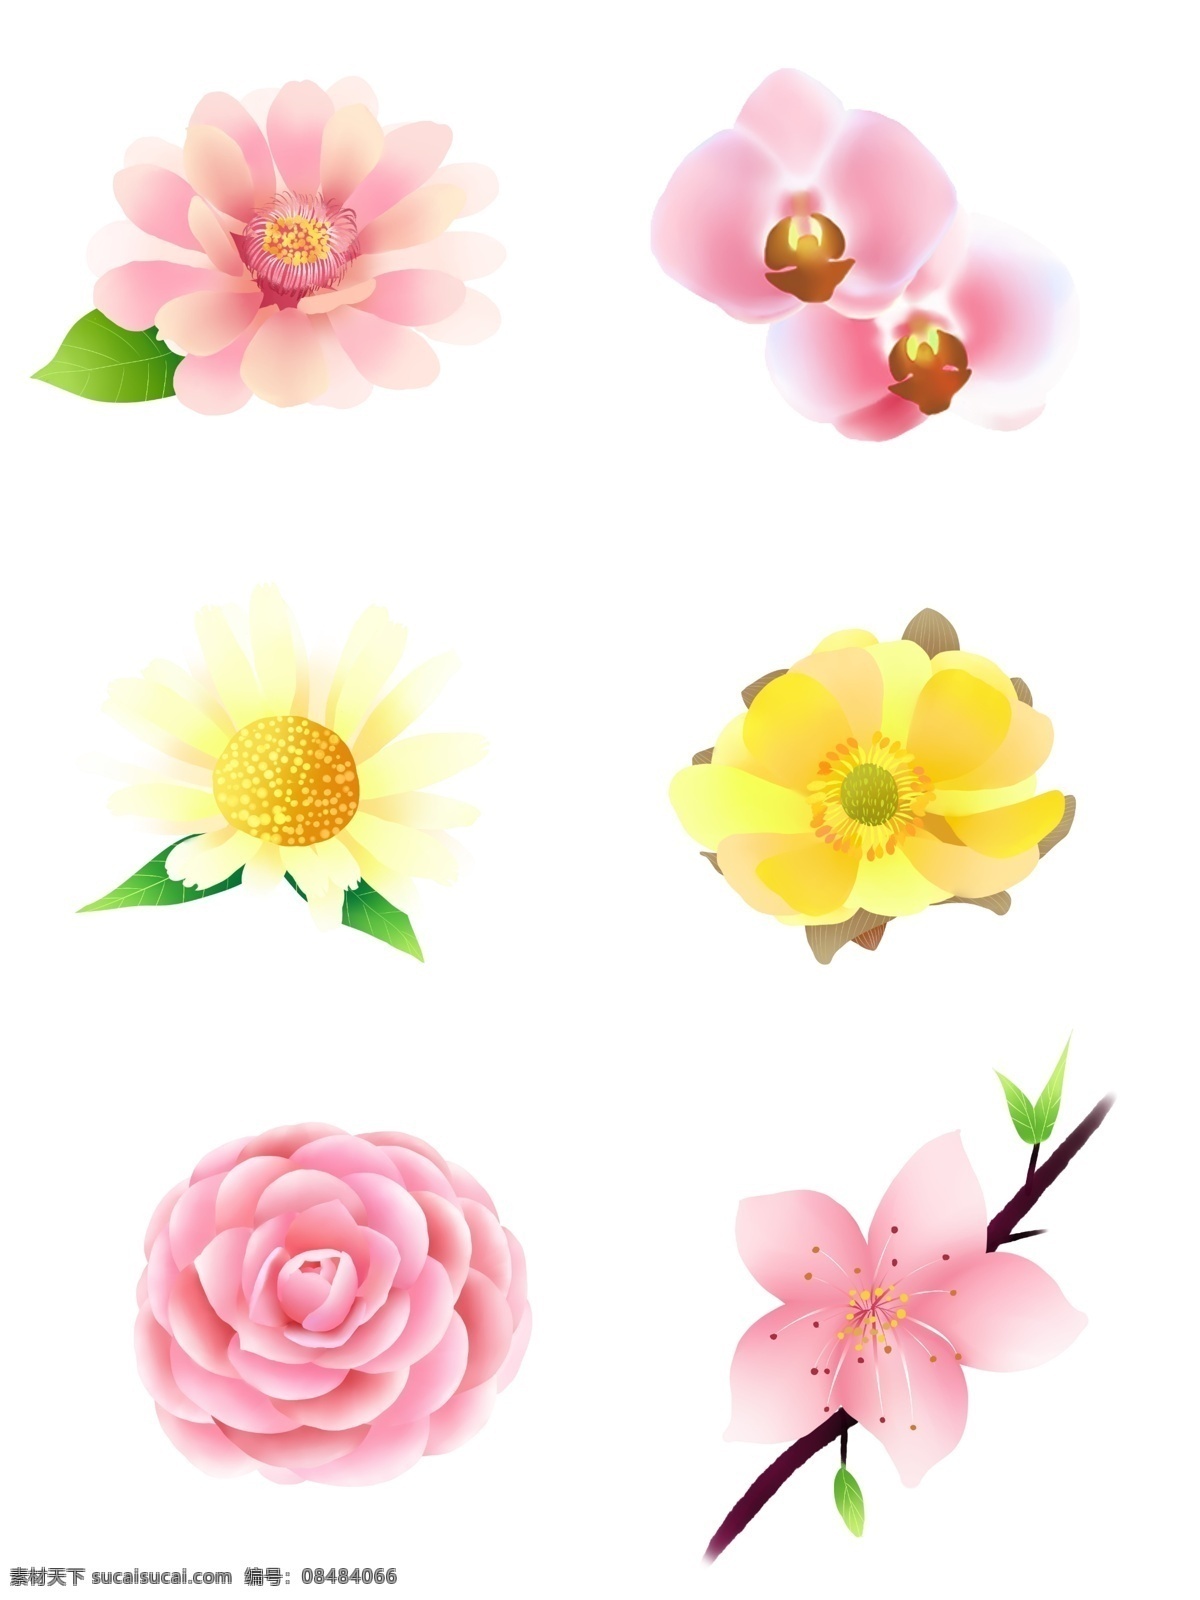 原创 小 清新 简约 梦幻 手绘 风 花朵 小清新 粉色 黄色 叶子 装饰图案 手绘花朵